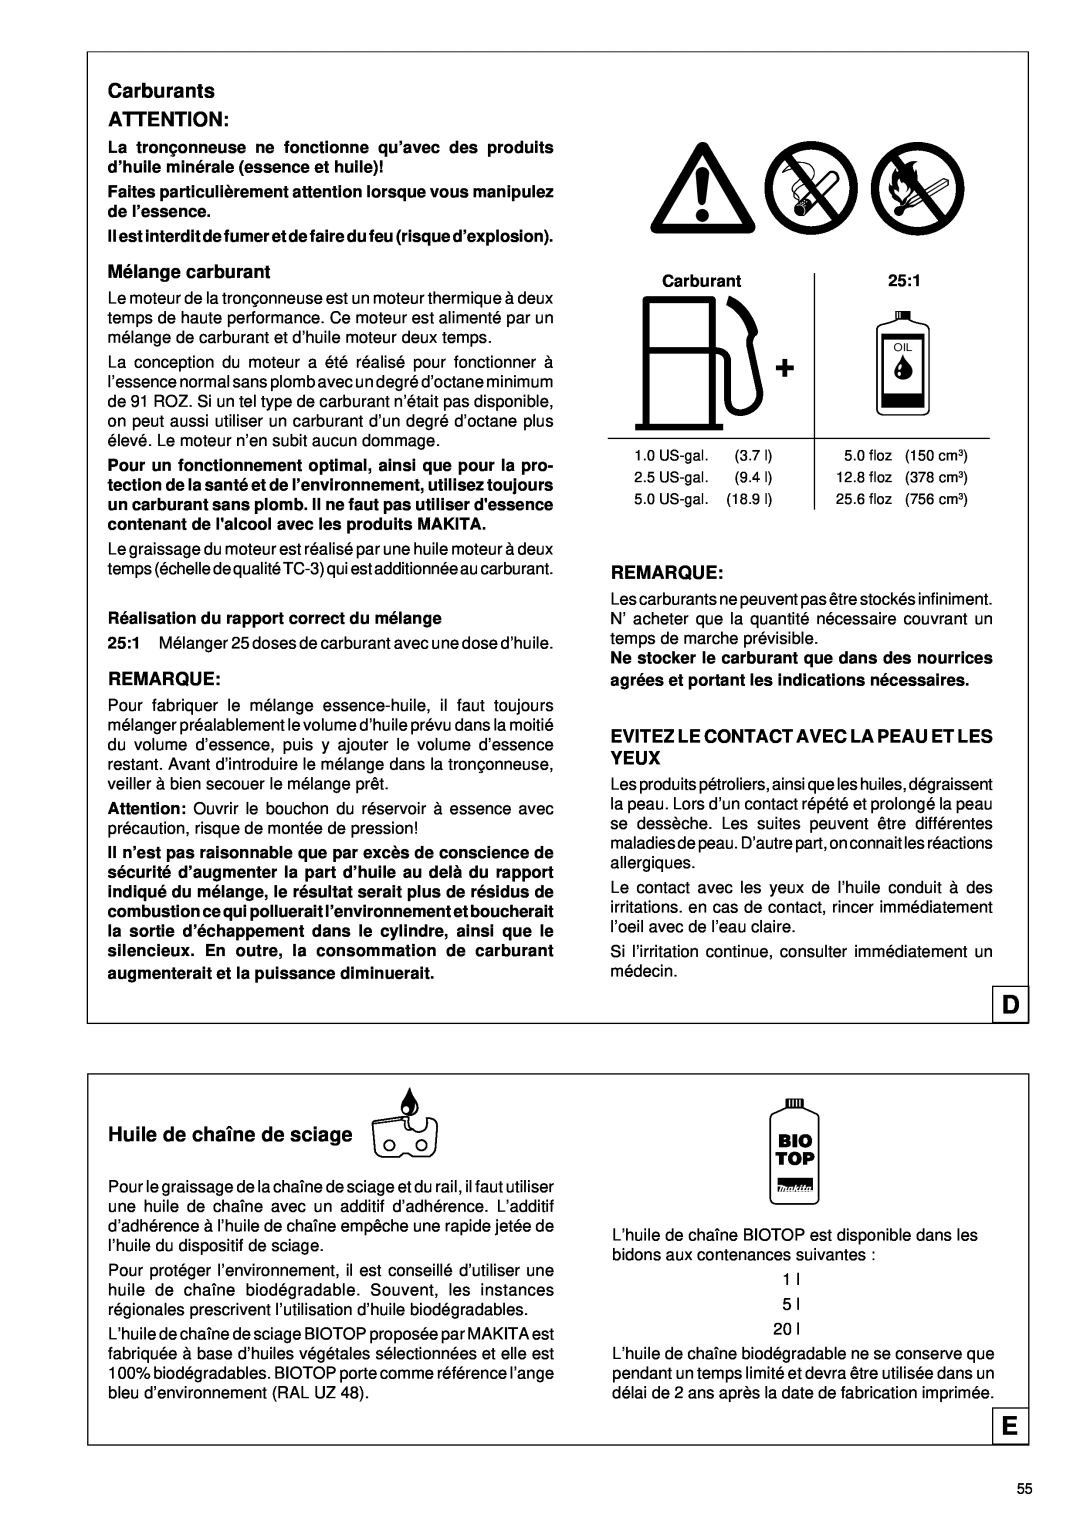 Makita DCS 330 TH instruction manual Carburants, Huile de chaîne de sciage 